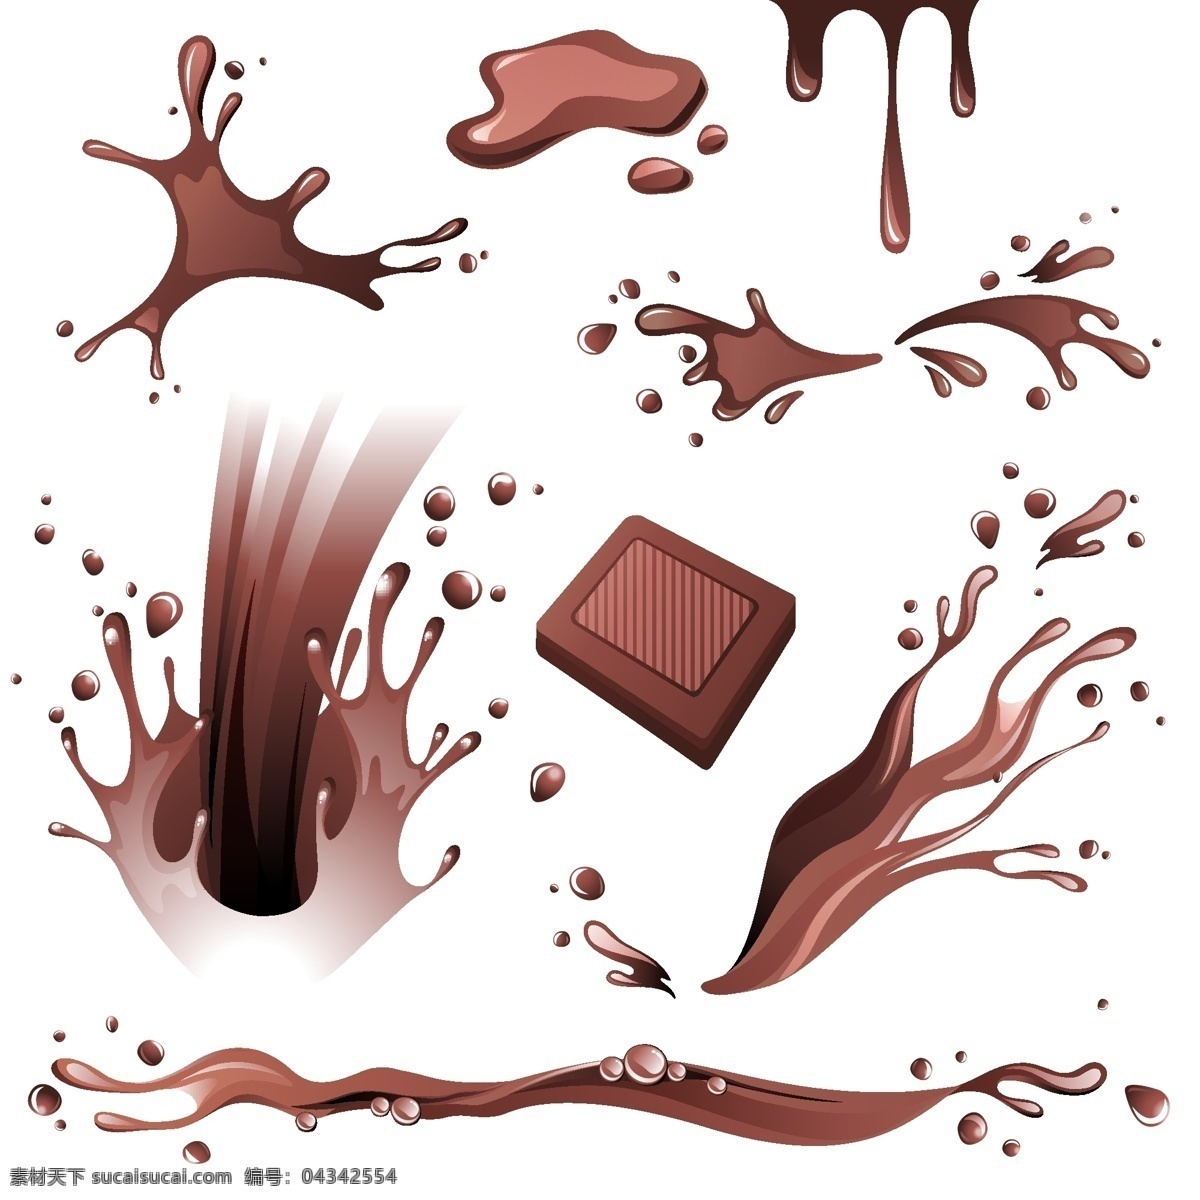 喷洒 巧克力 汁 甜品 食物 零食 餐饮美食 生活百科 矢量素材 白色